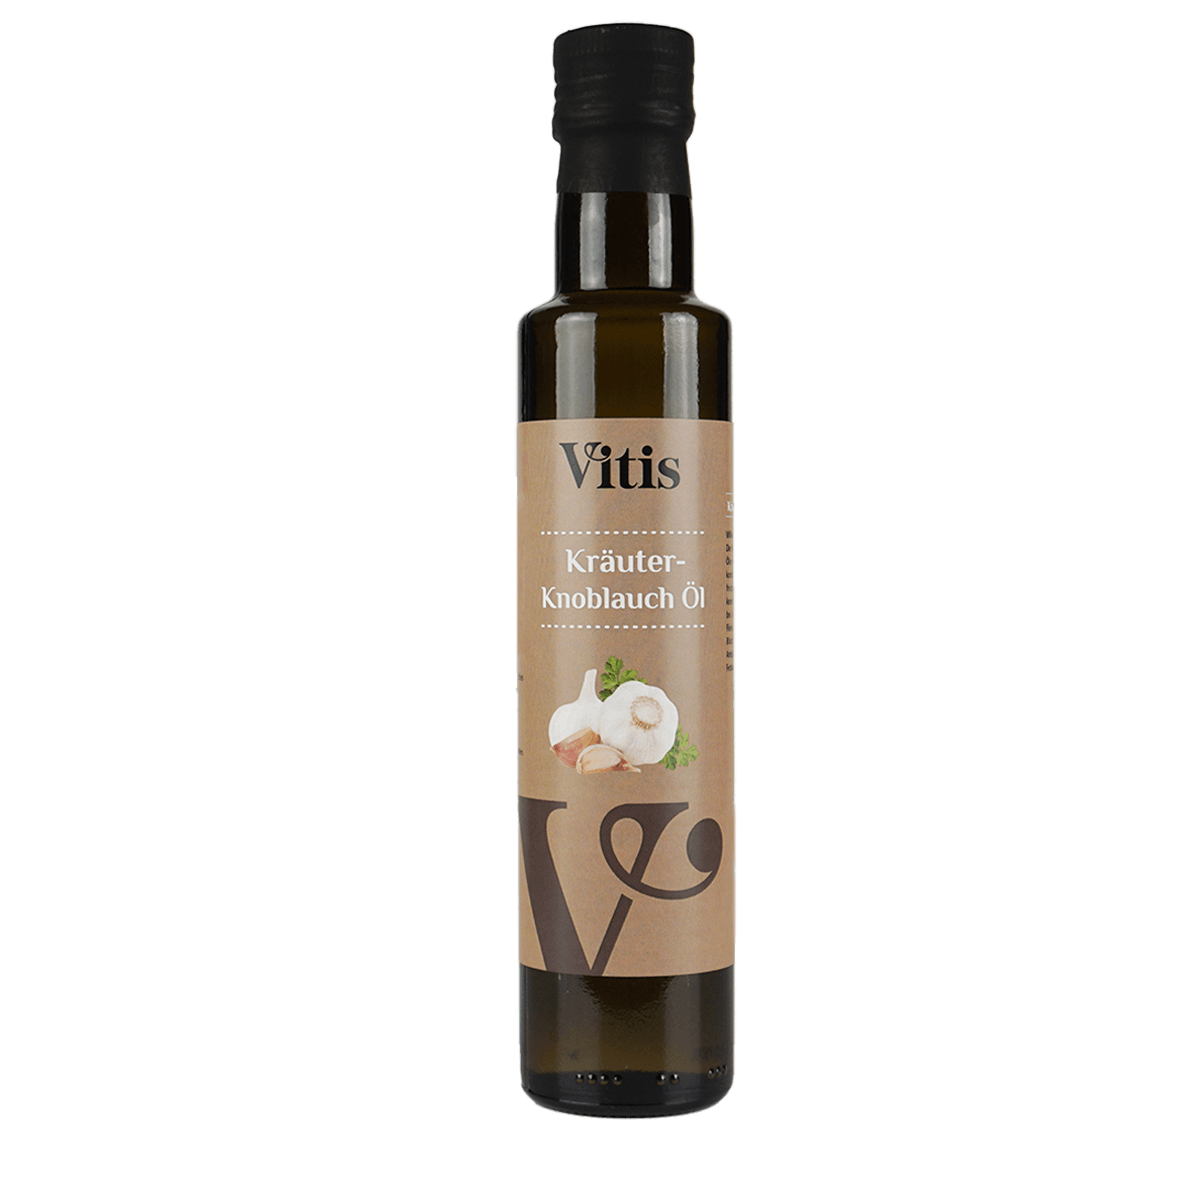 Eine Flasche Kräuter Knoblauch Öl von Vitis24.